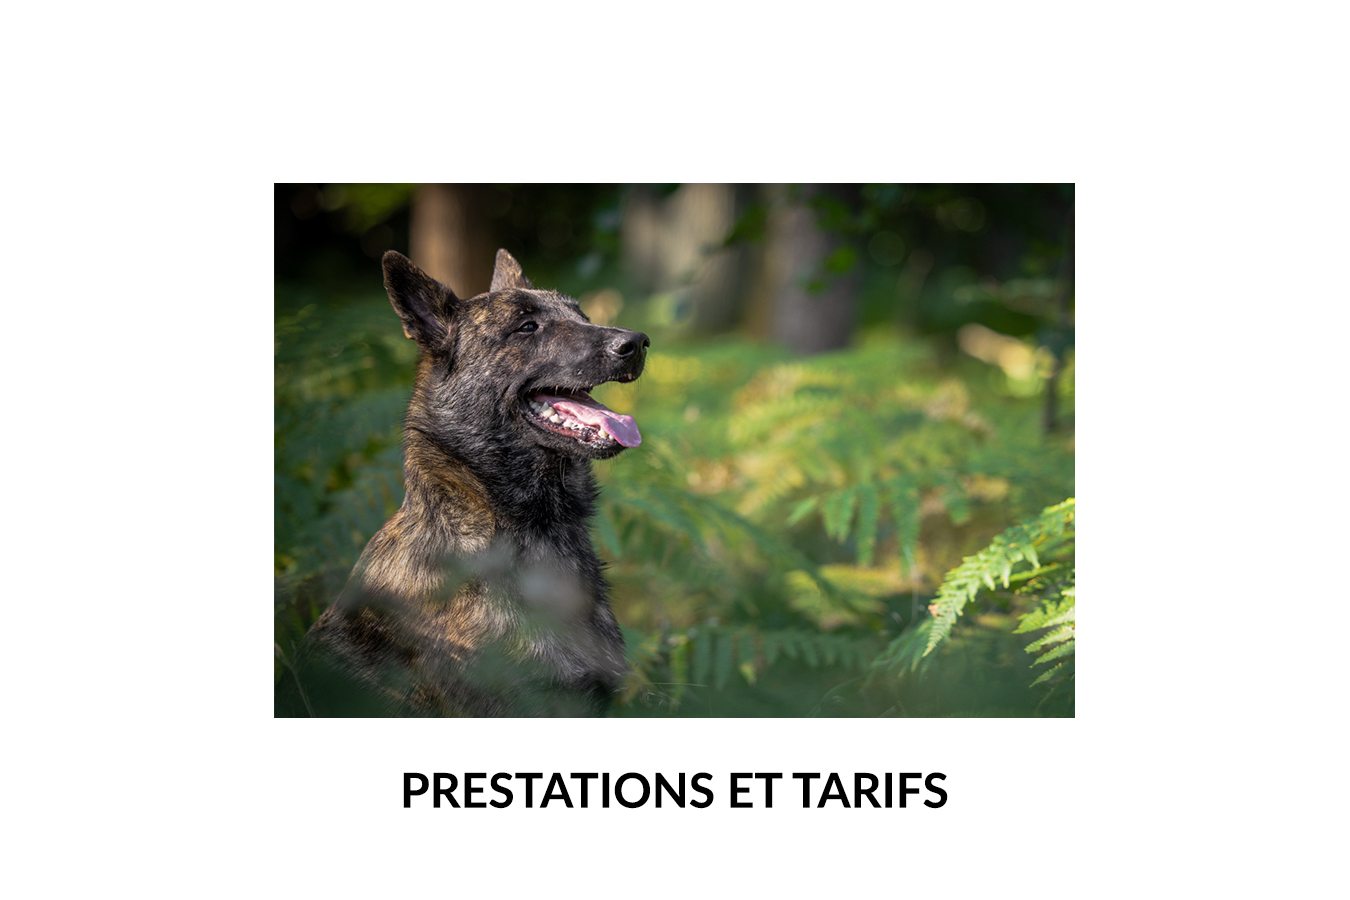 Image de chien avec Titre " Prestations et tarifs"